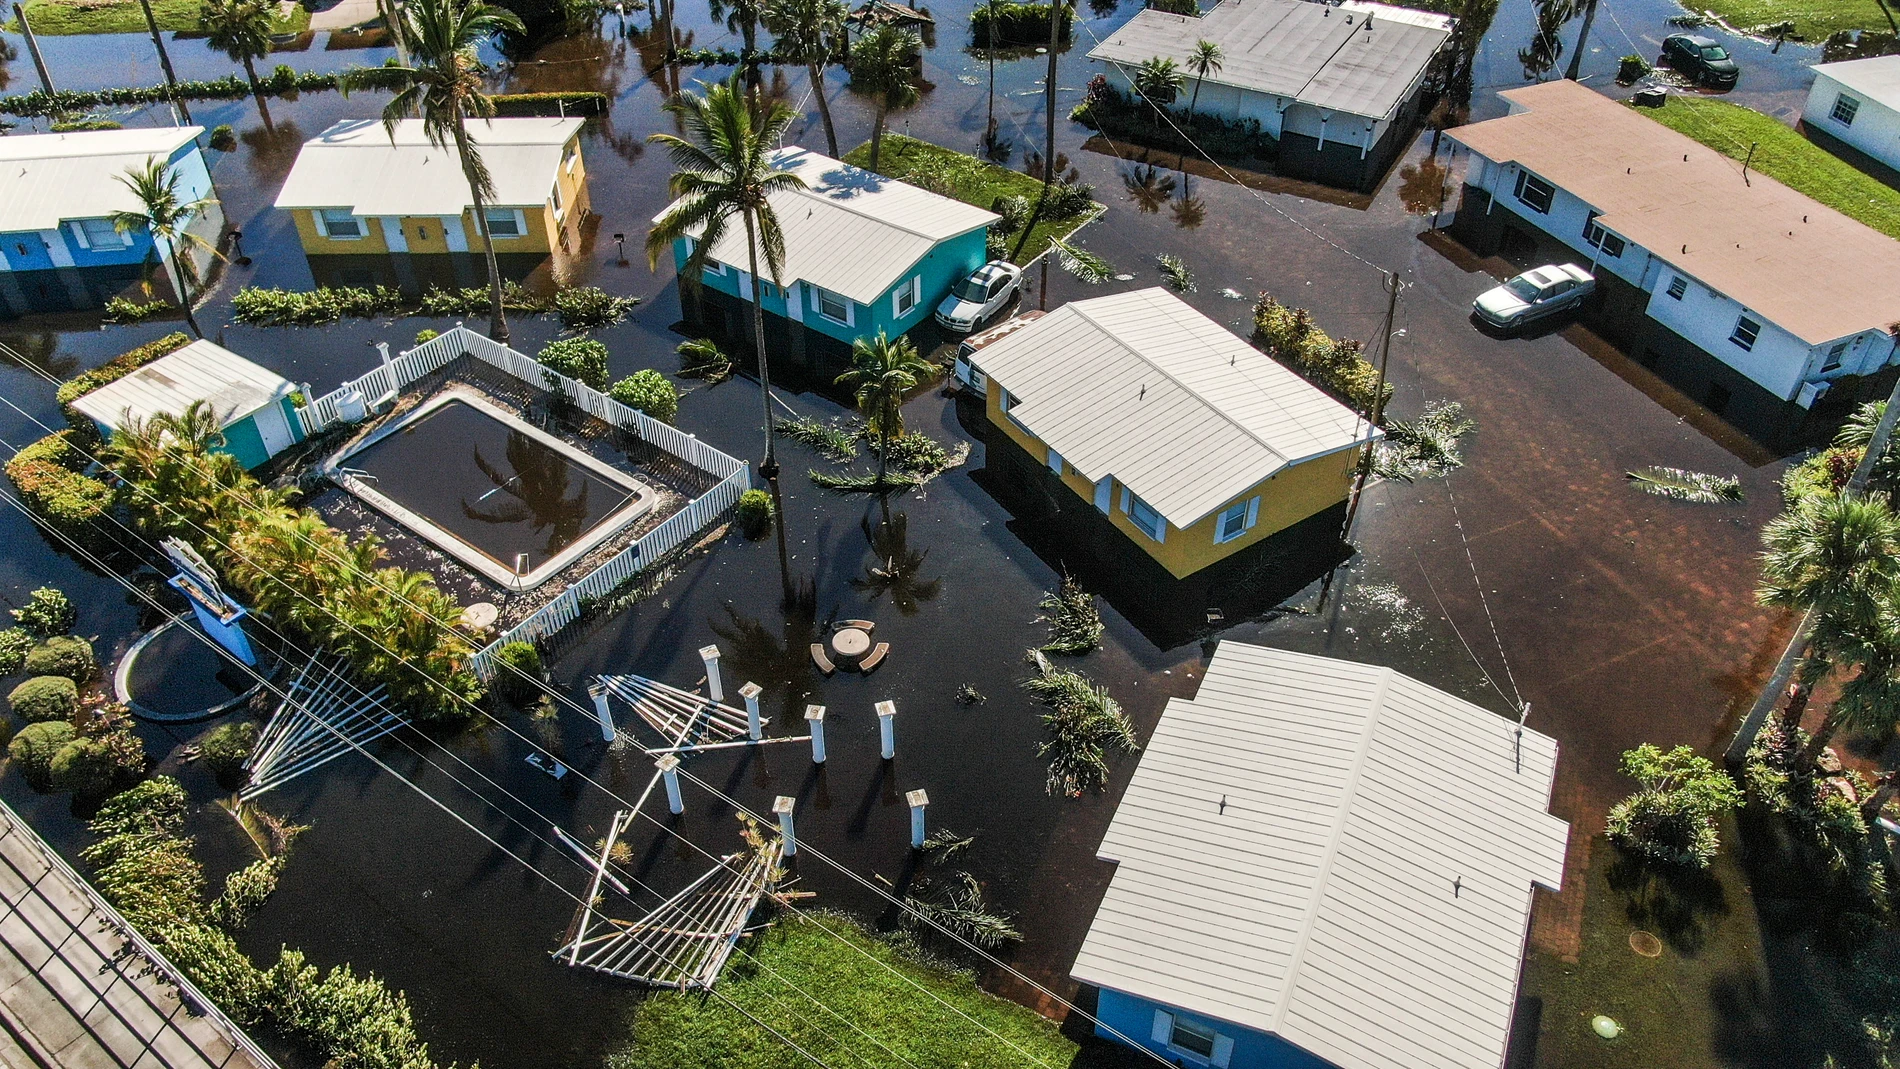 Las casas de Florida han quedado inundadas tras el paso del huracán 